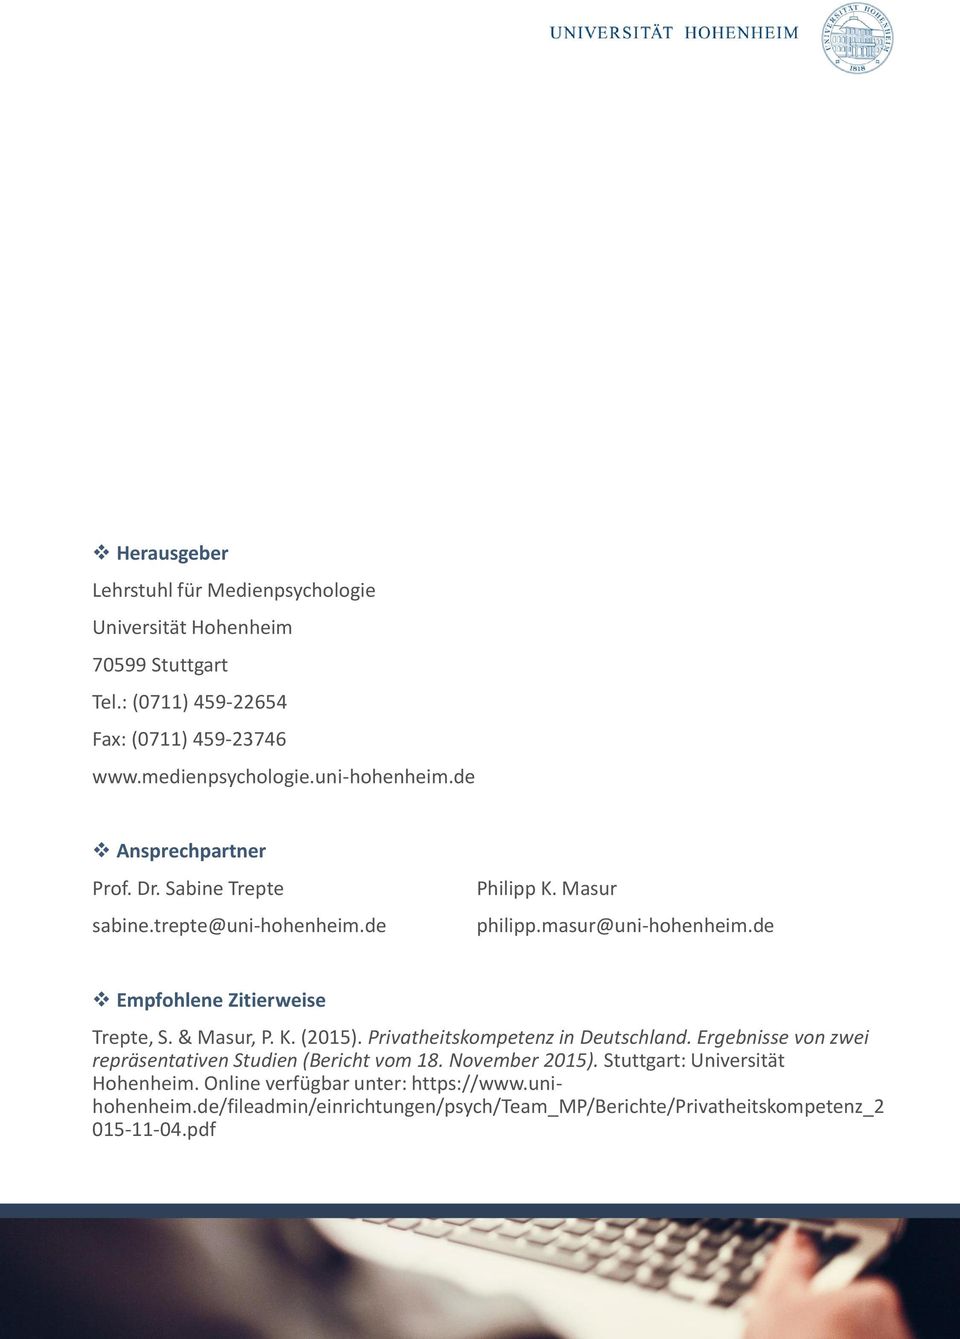 de Empfohlene Zitierweise Trepte, S. & Masur, P. K. (2015). Privatheitskompetenz in Deutschland. Ergebnisse von zwei repräsentativen Studien (Bericht vom 18.